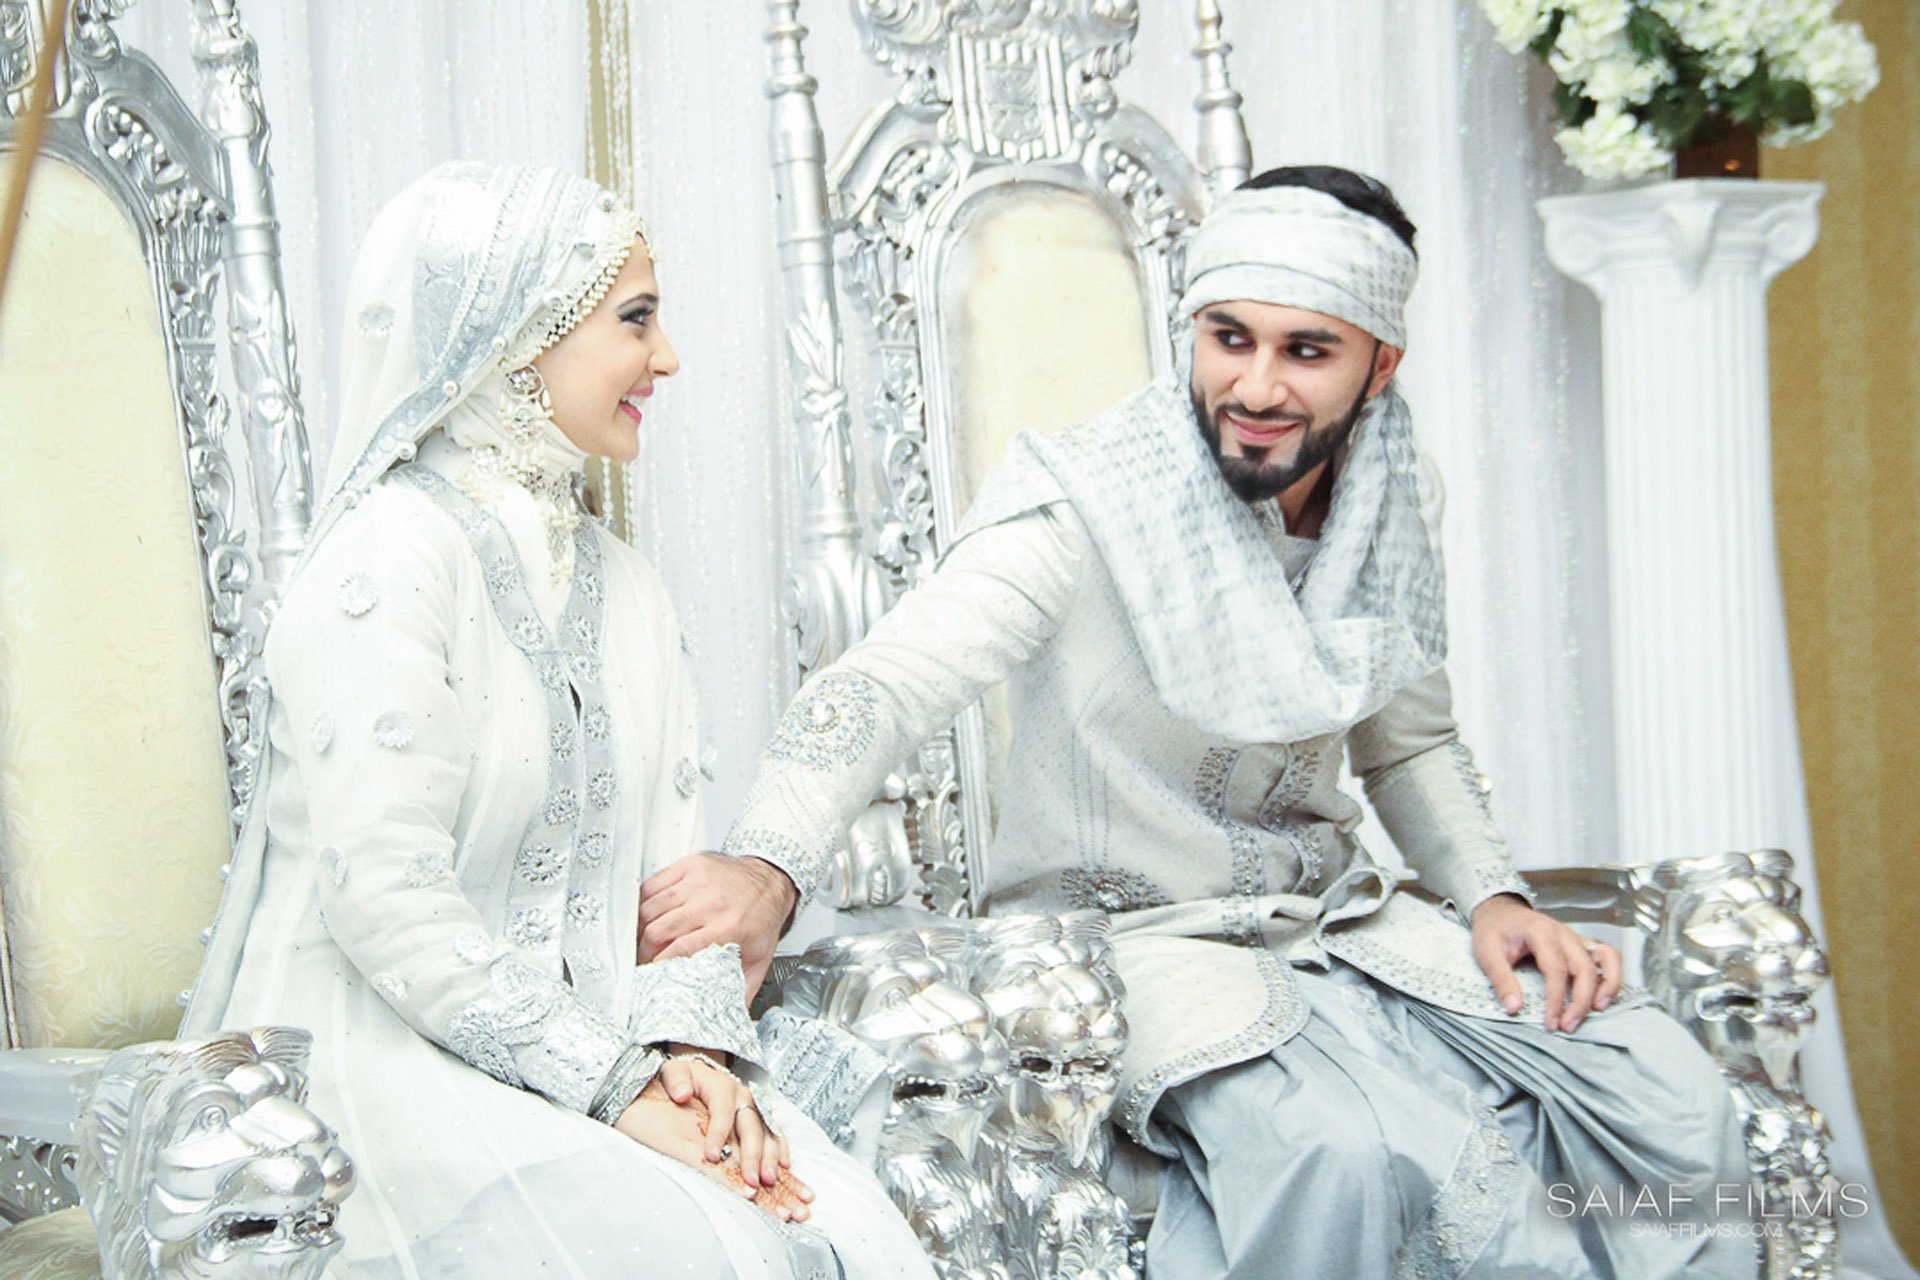 Муж и жена арабские. Хутбаи никох. Хутбаи никох бо араби. Хутбаи никох форси. Арабская свадьба.